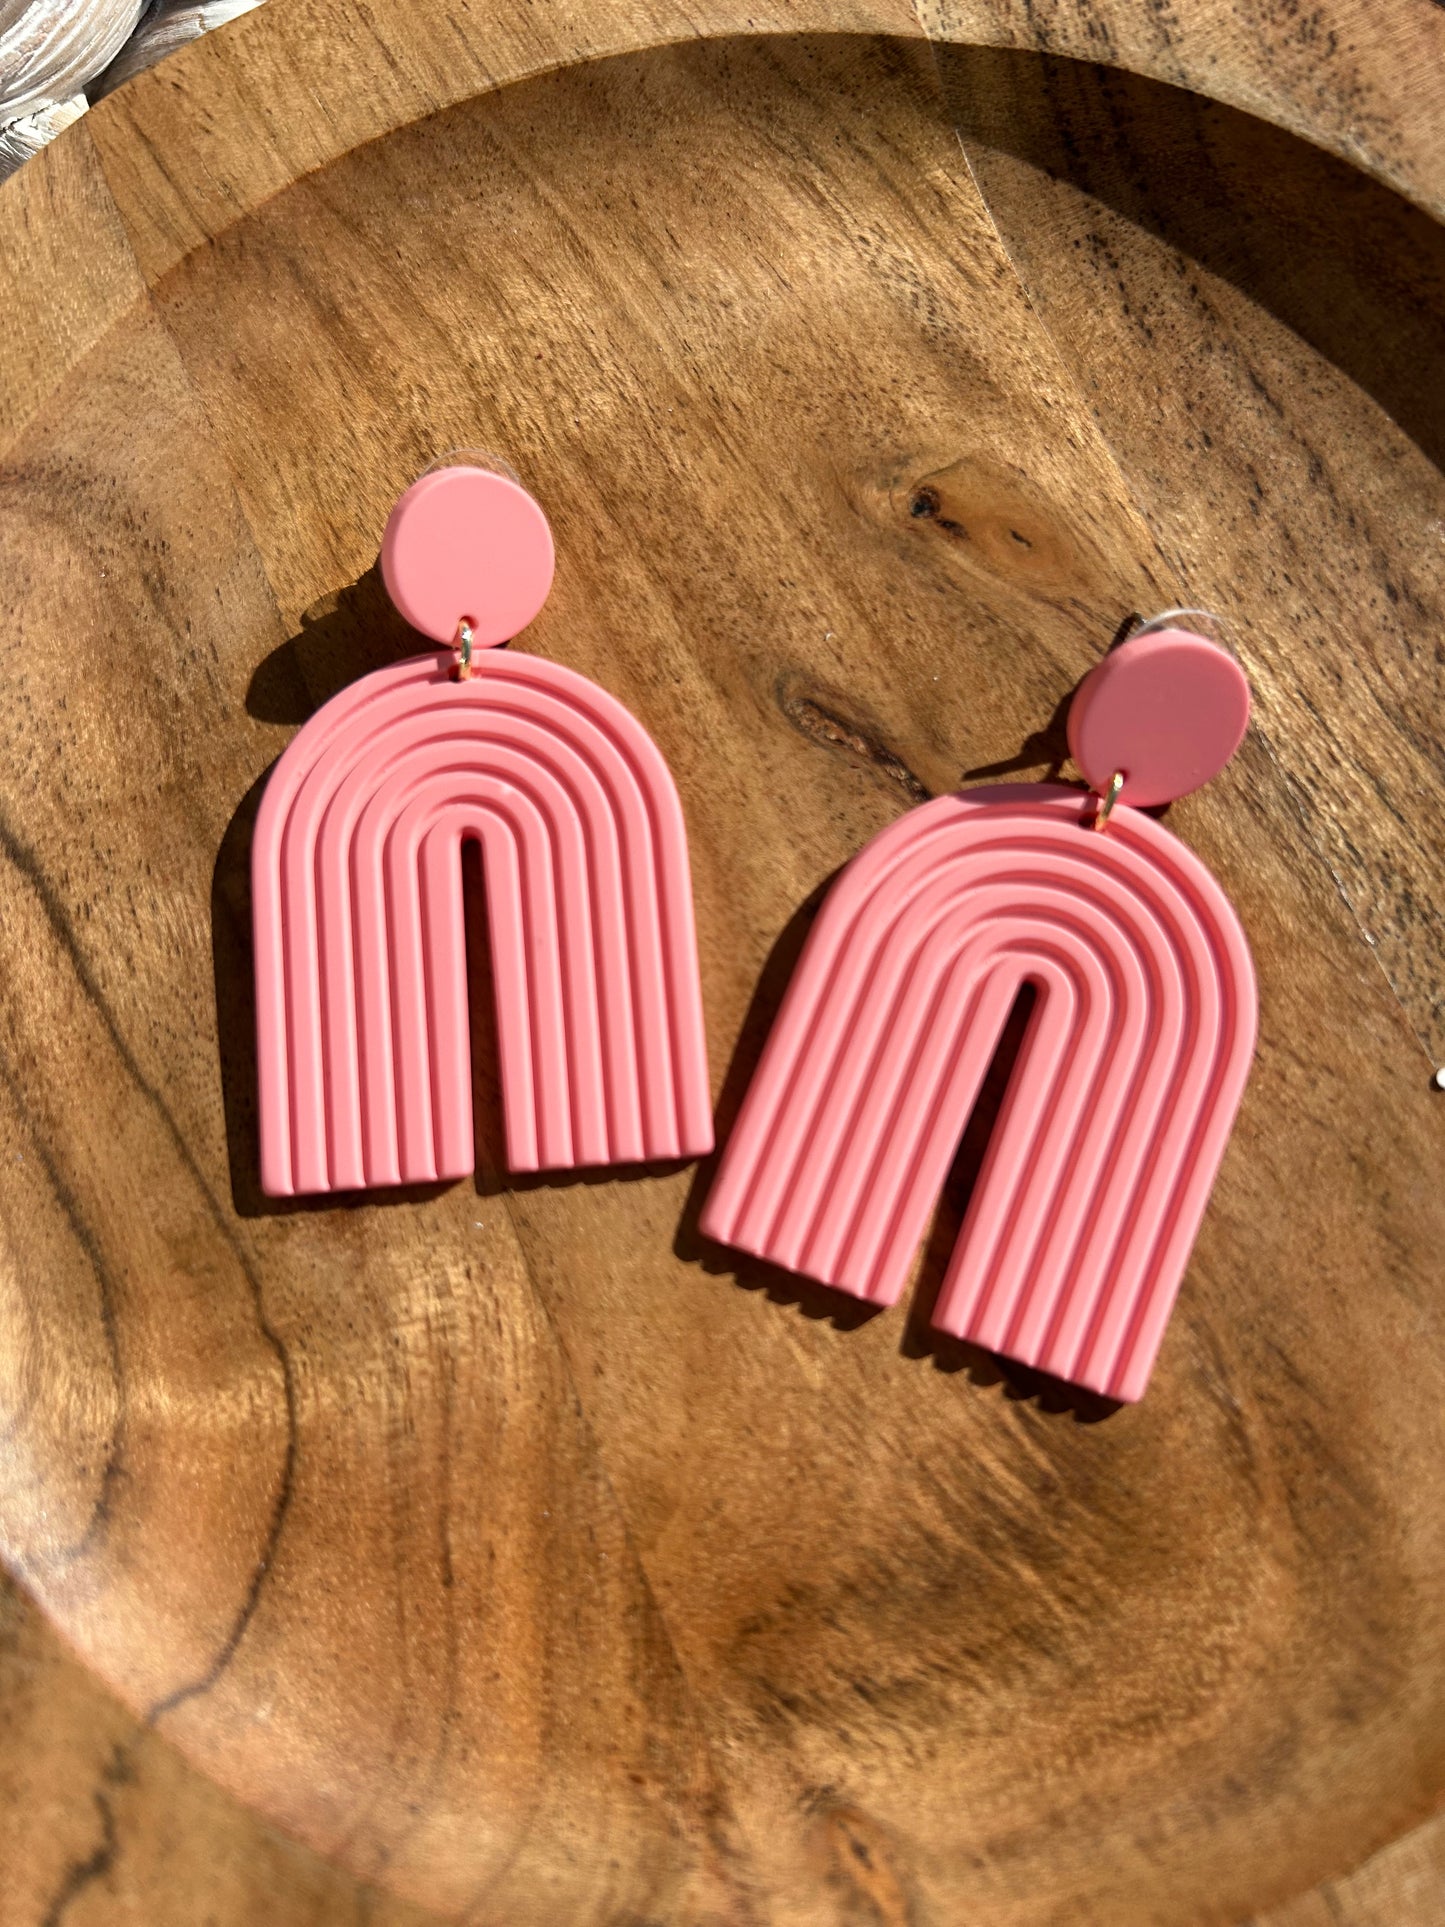 Pink Rainbow Earrings